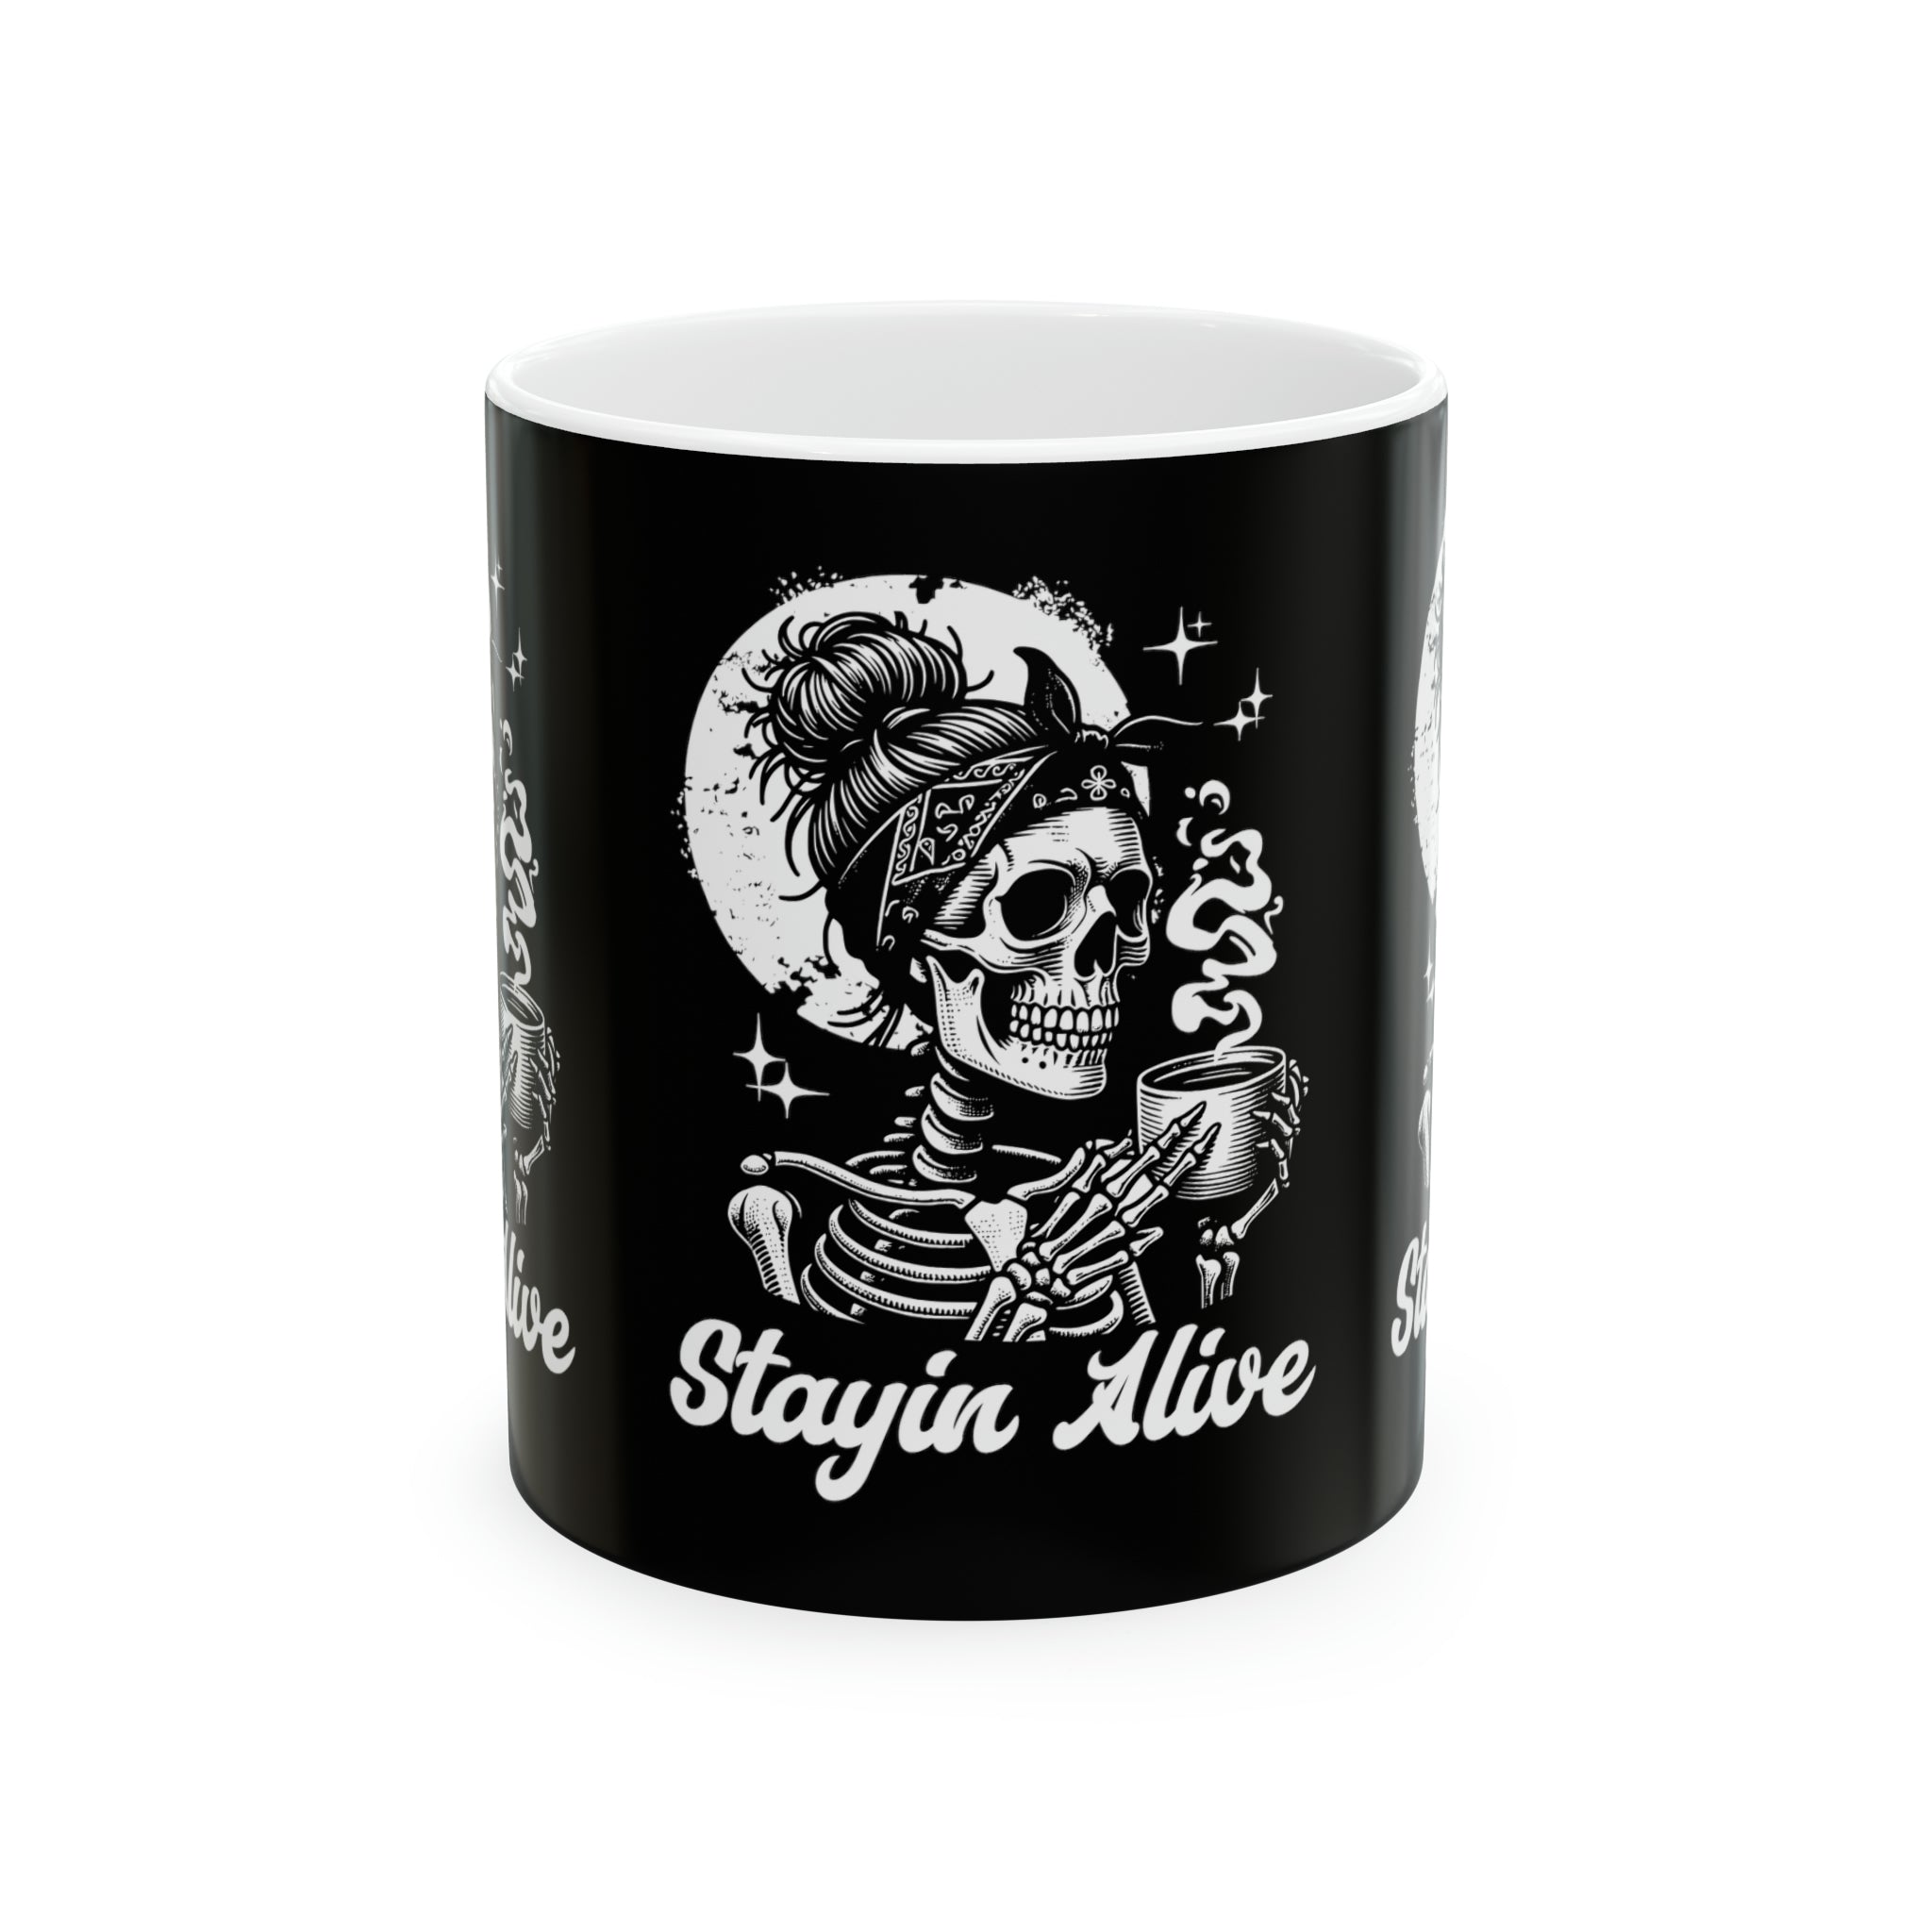 Stayin Alive Ceramic Mug, 11oz